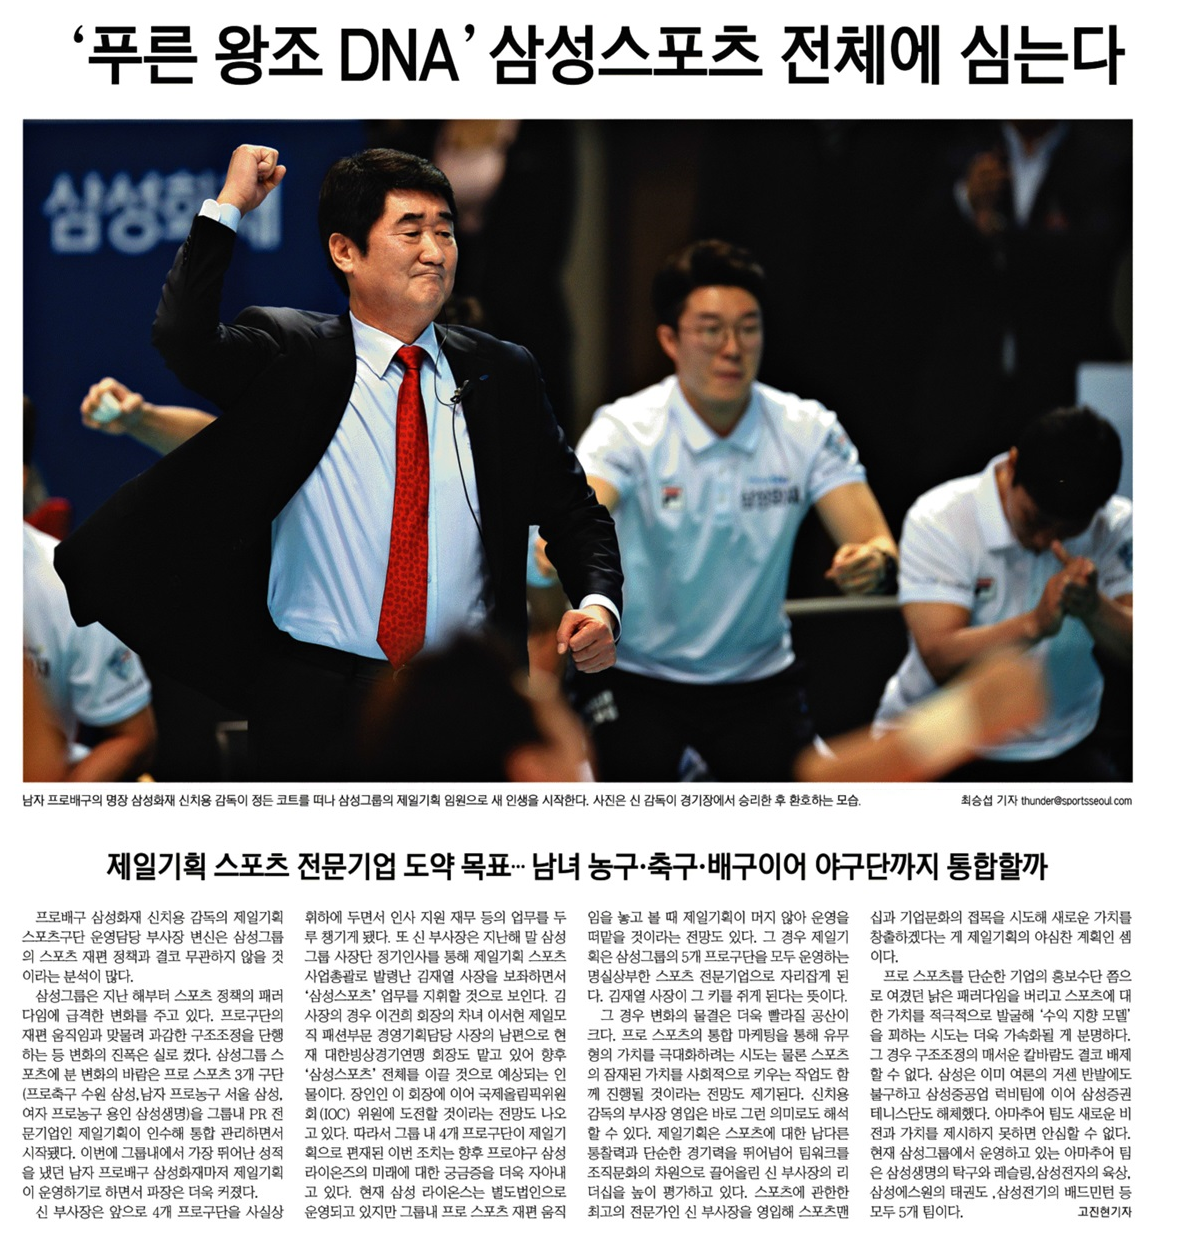 '푸른 왕조 DNA' 삼성스포츠 전체에 심는다